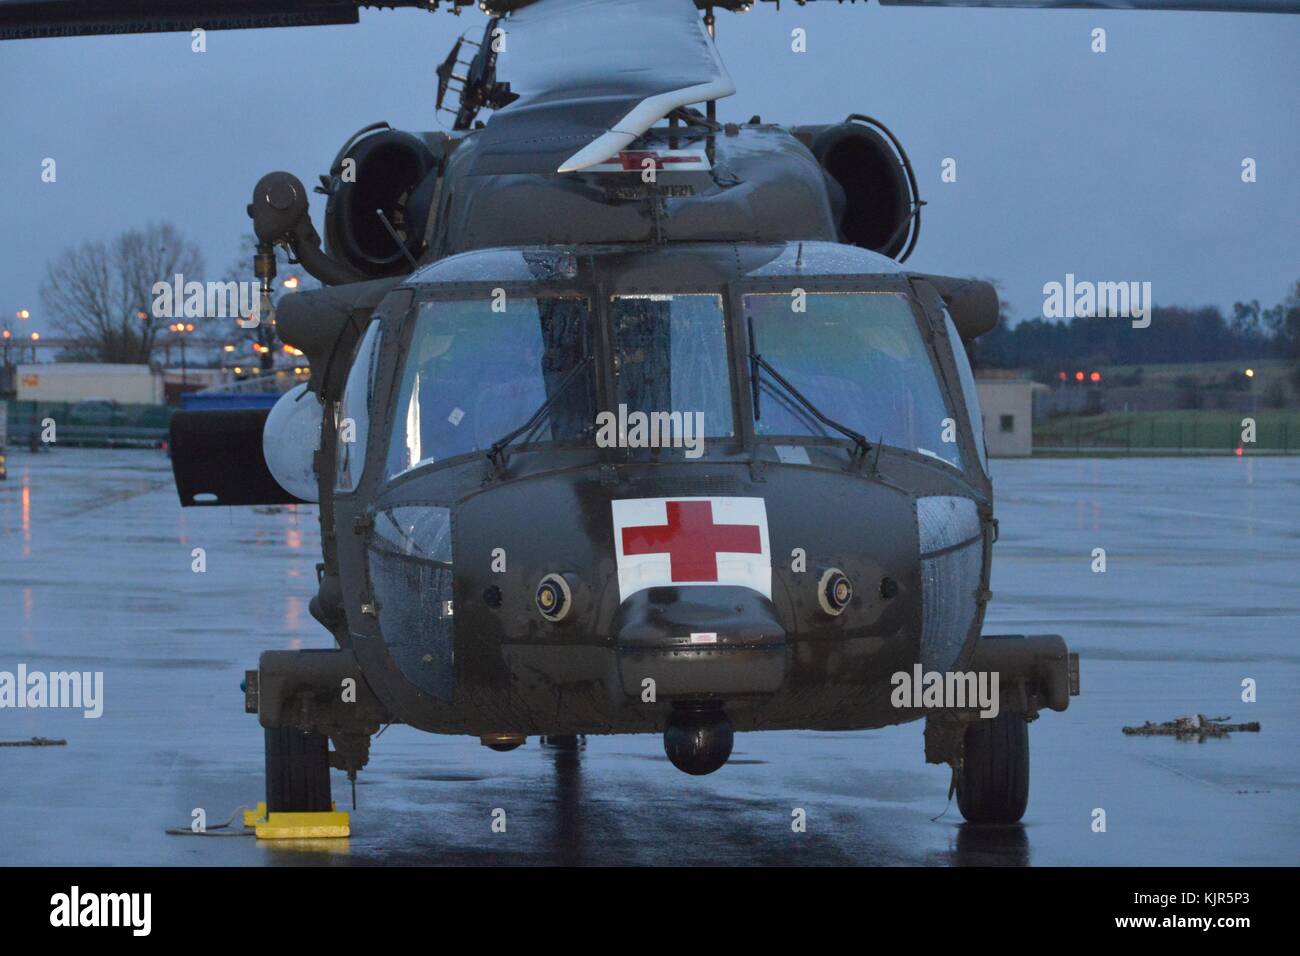 An einem kalten, windigen, regnerischen Nachmittag, ein Black Hawk Hubschrauber vom 2-227 th Aviation Regiment, 1 Air Cavalry Brigade aus Fort Hood Texas sitzen auf t Stockfoto